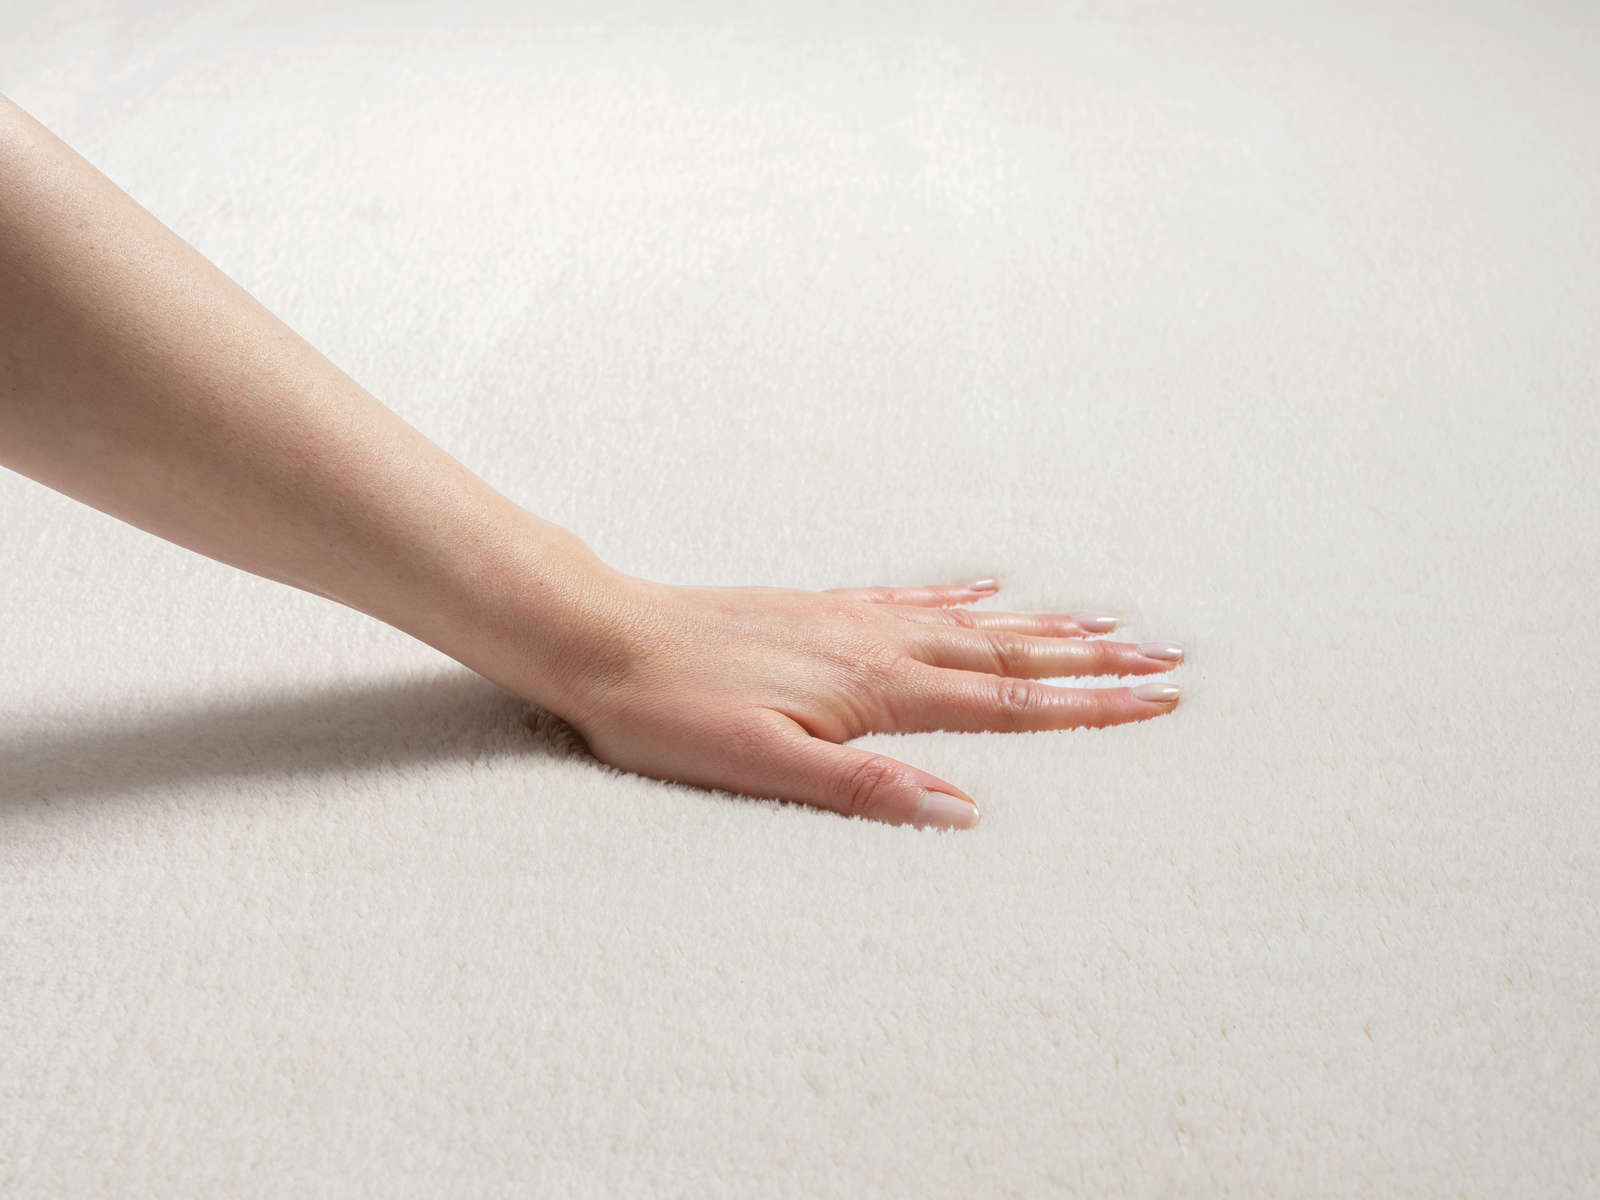             Modischer Hochflor Teppich in Creme – 200 x 140 cm
        